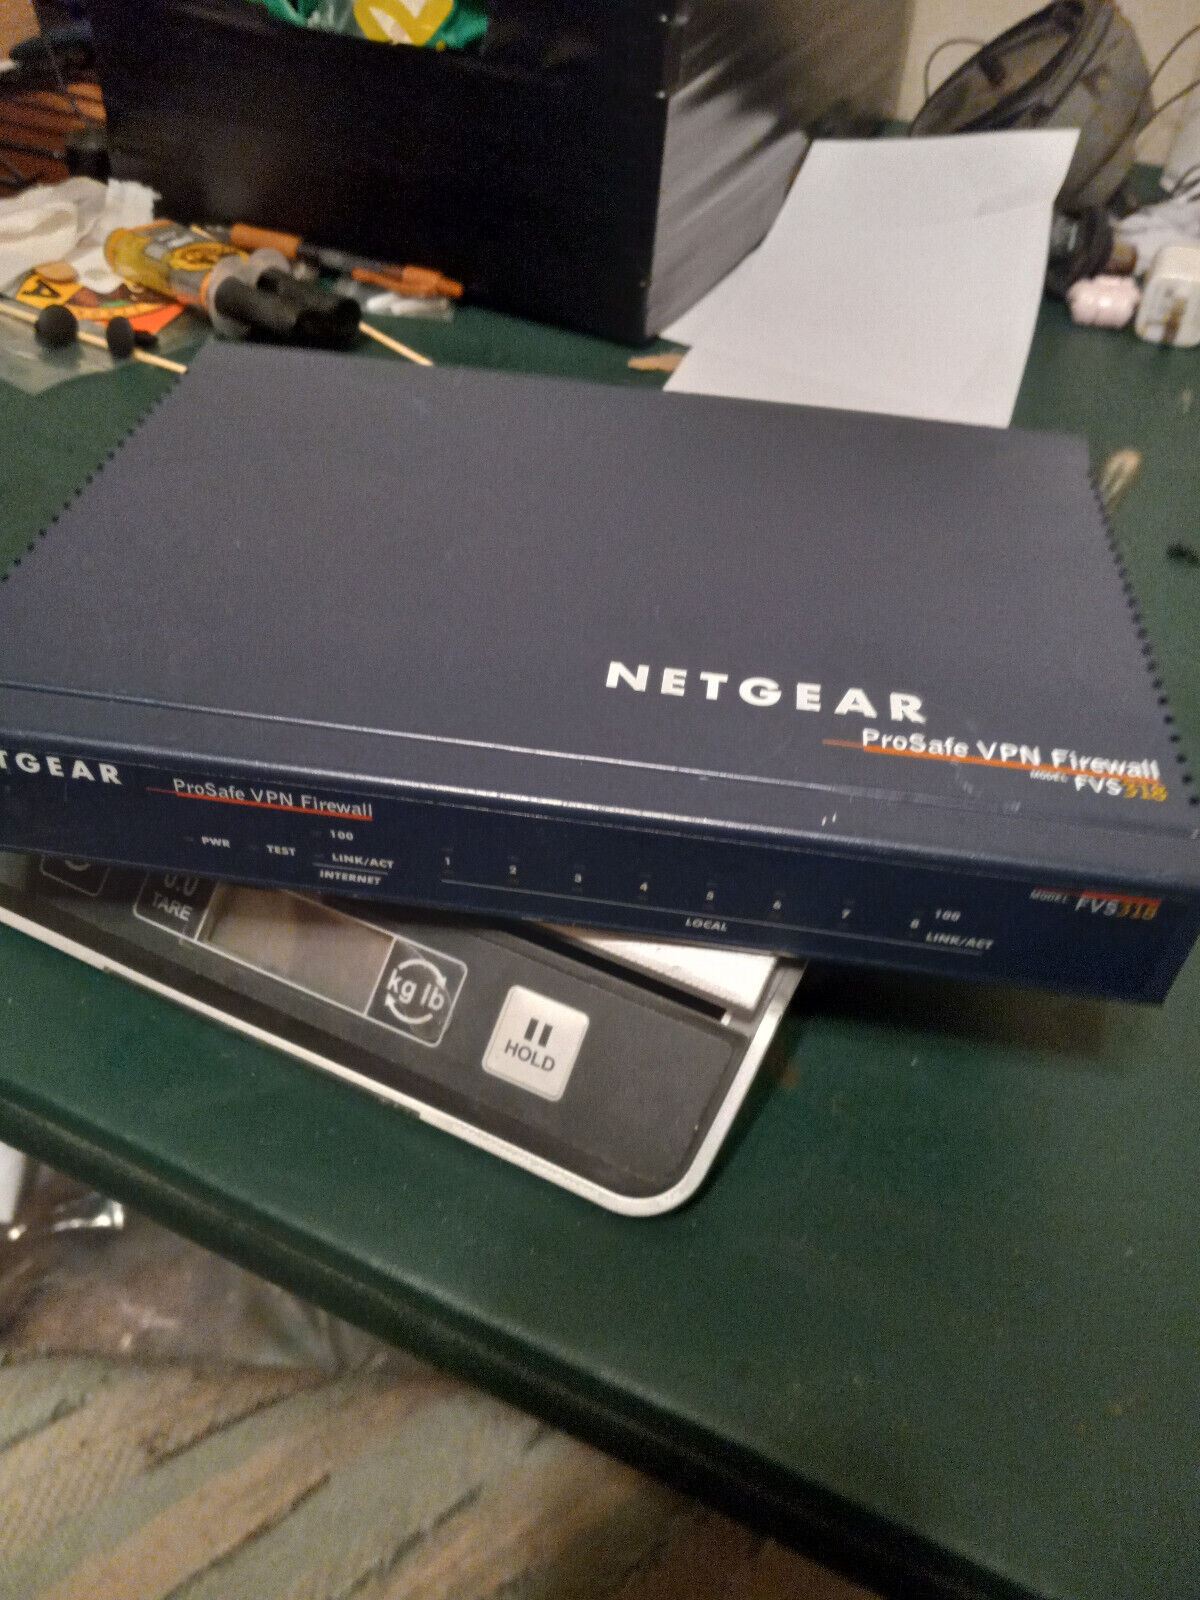 NETGEAR FVS318-100NAS PROSAFE 8-PORT GIGABIT VPN FIREWALL. No PS